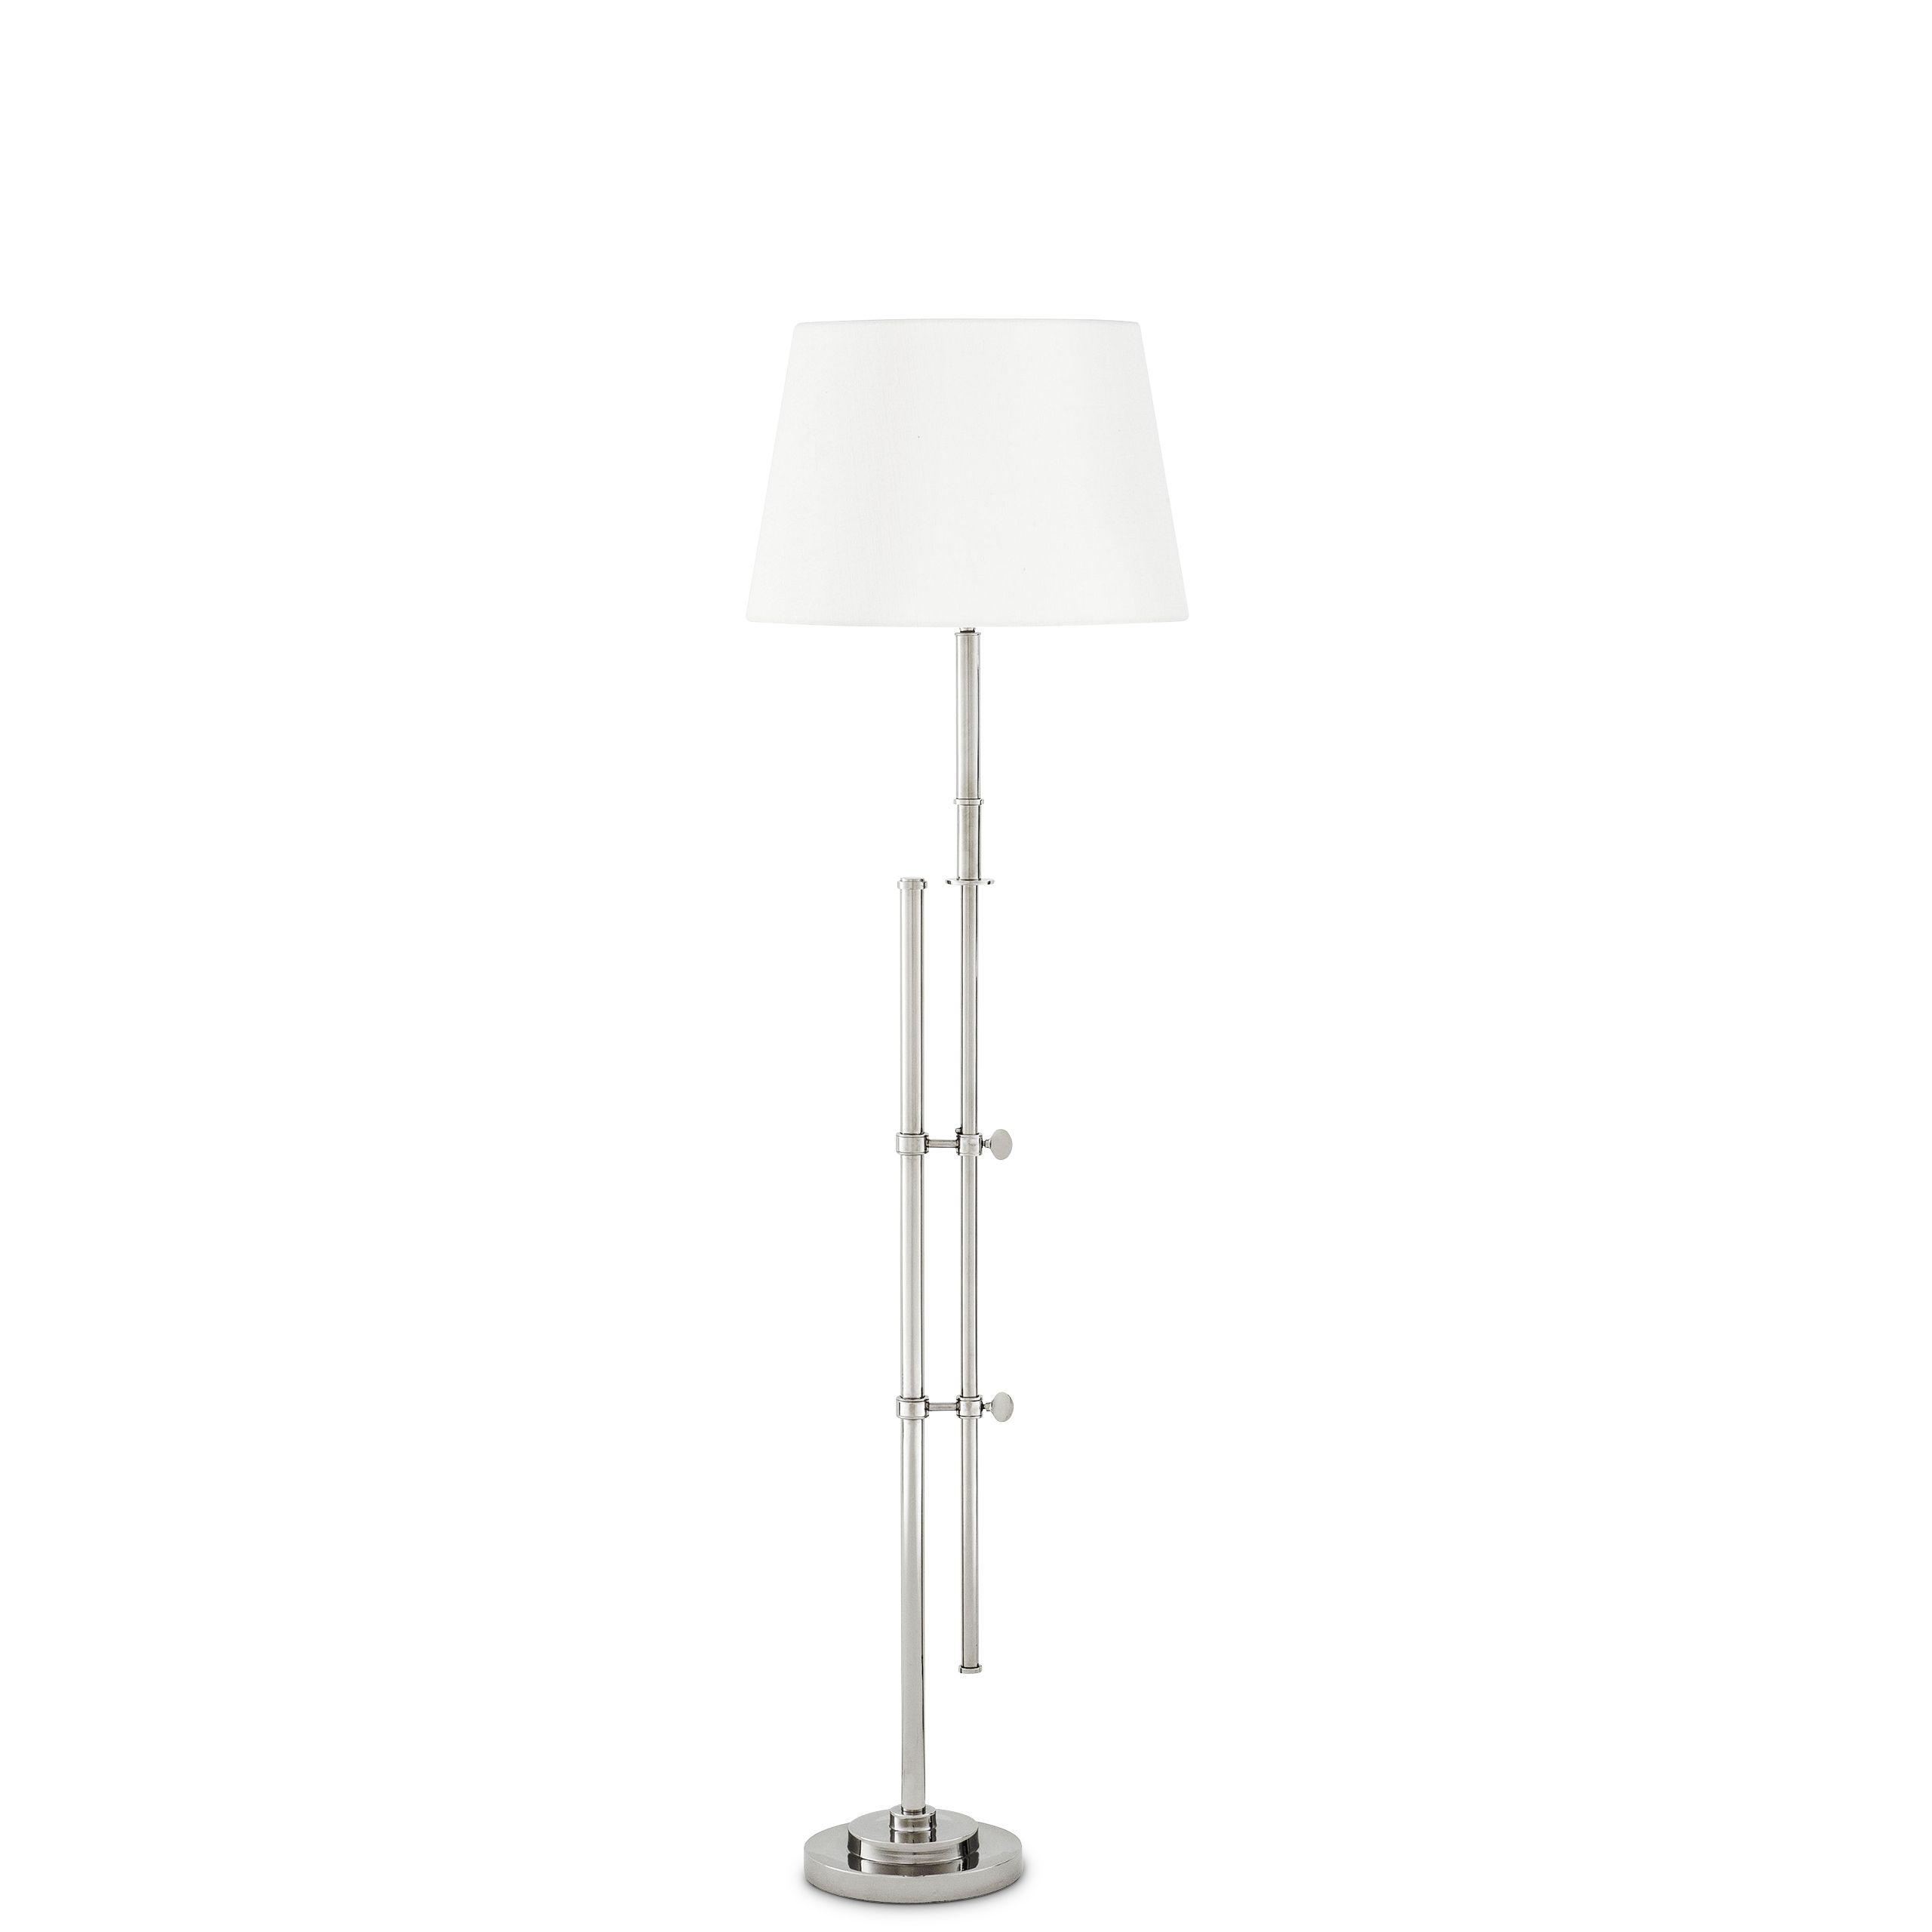 Купить Торшер Floor Lamp Gordini в интернет-магазине roooms.ru